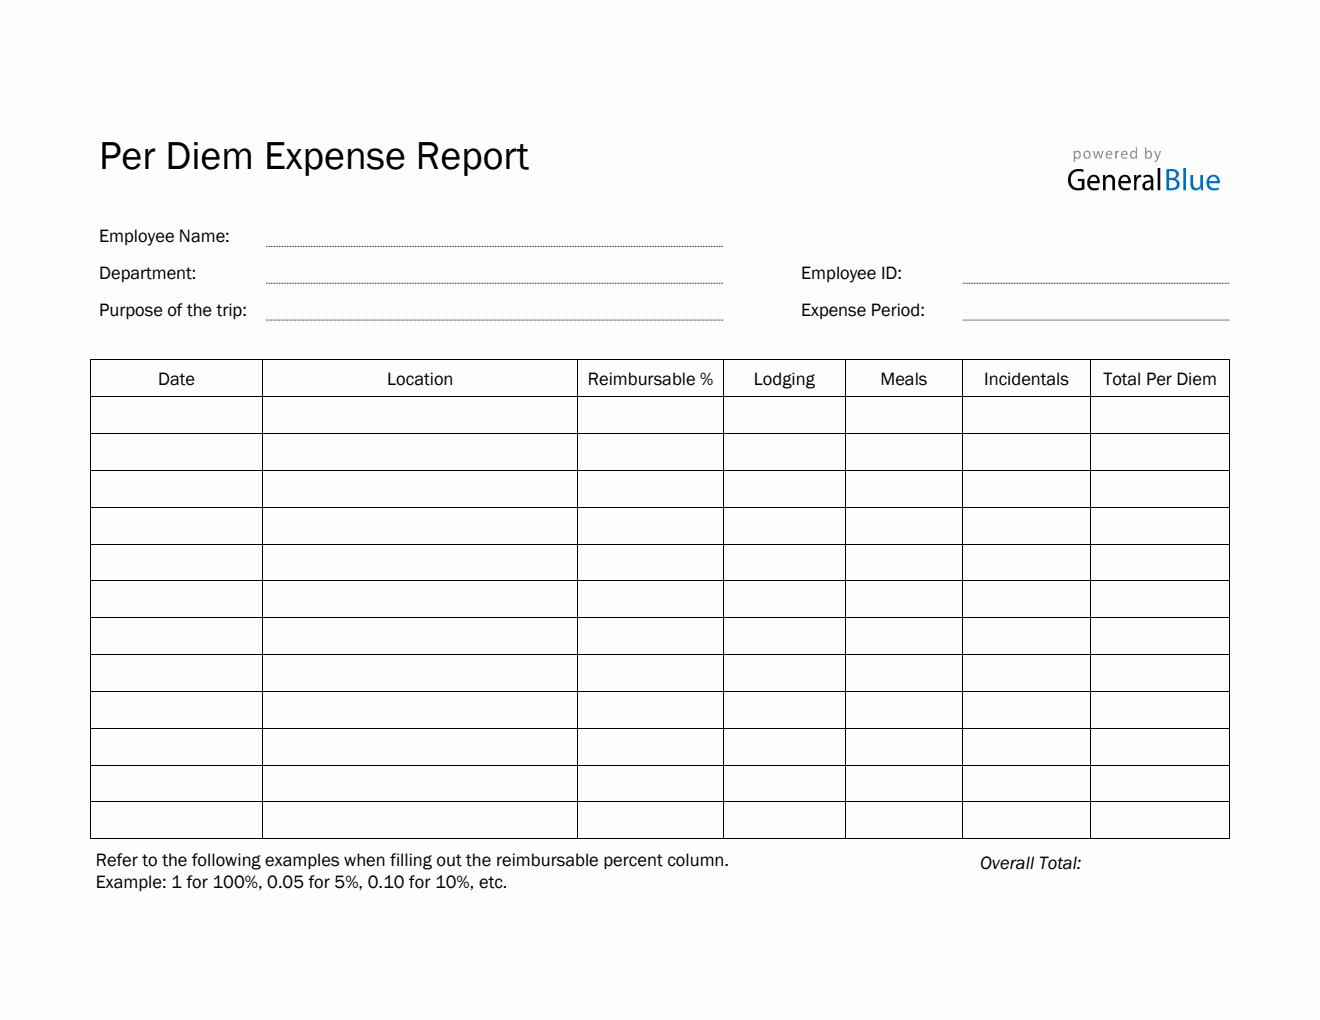 Per Diem Expense Report Template in PDF (Printable)